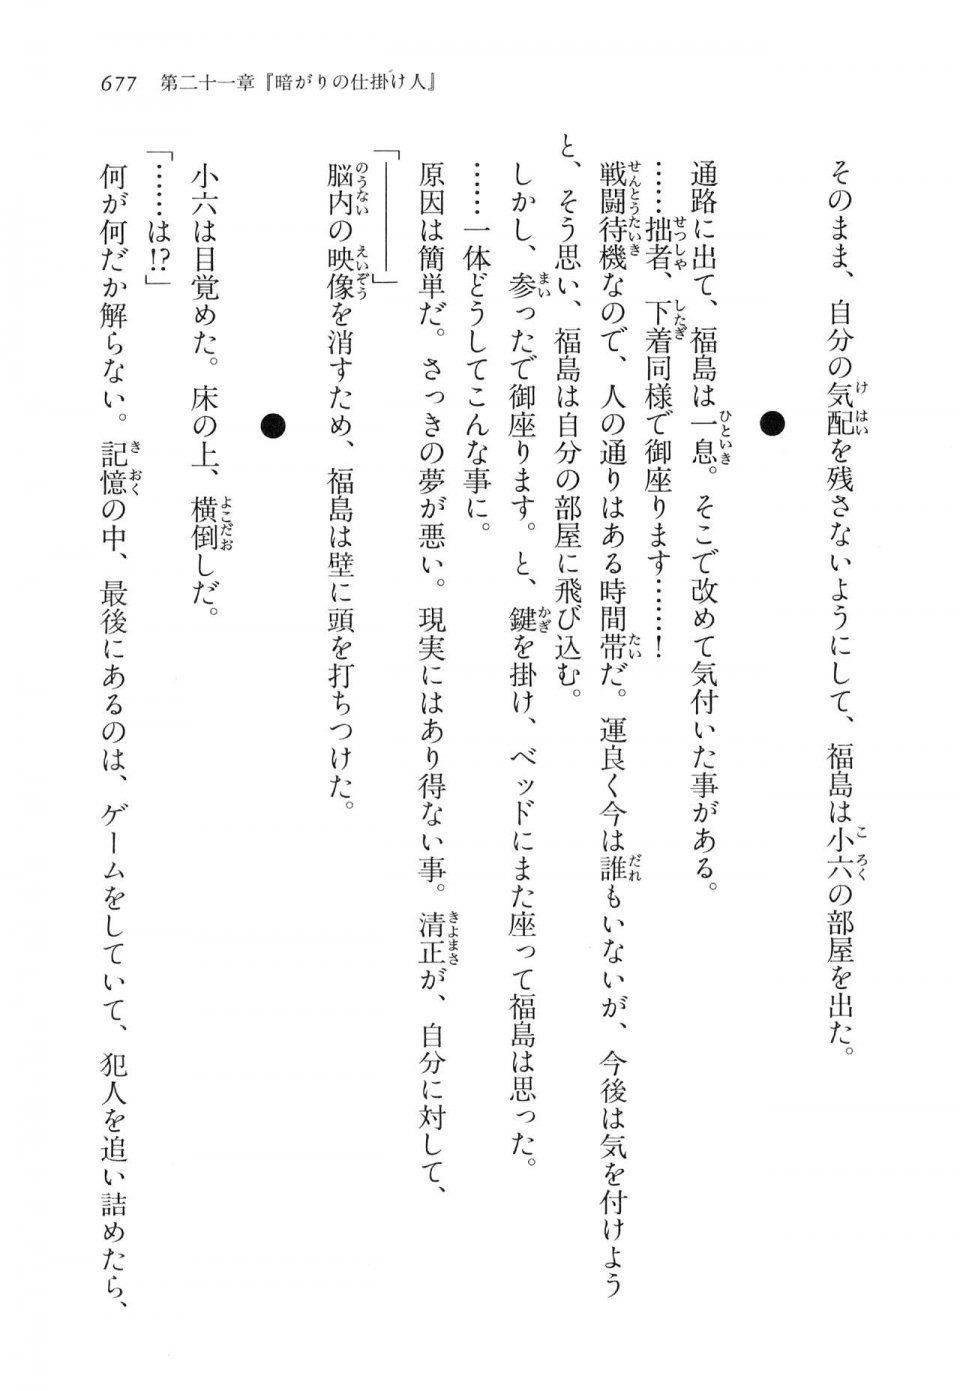 Kyoukai Senjou no Horizon LN Vol 16(7A) - Photo #677